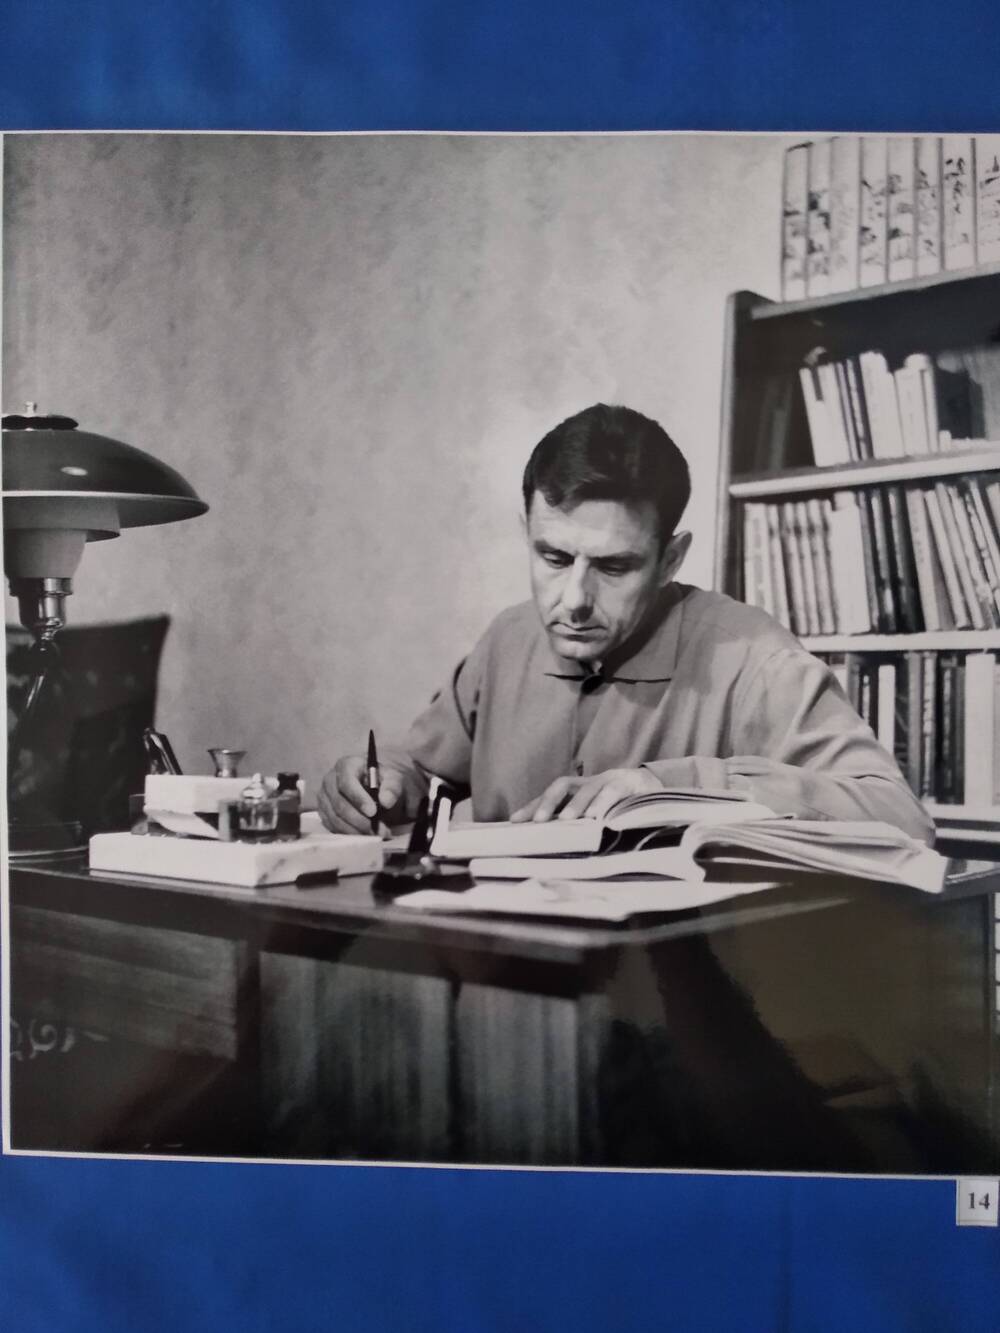 Фотография сюжетная черно-белая космонавта В.Комарова за рабочим столом.